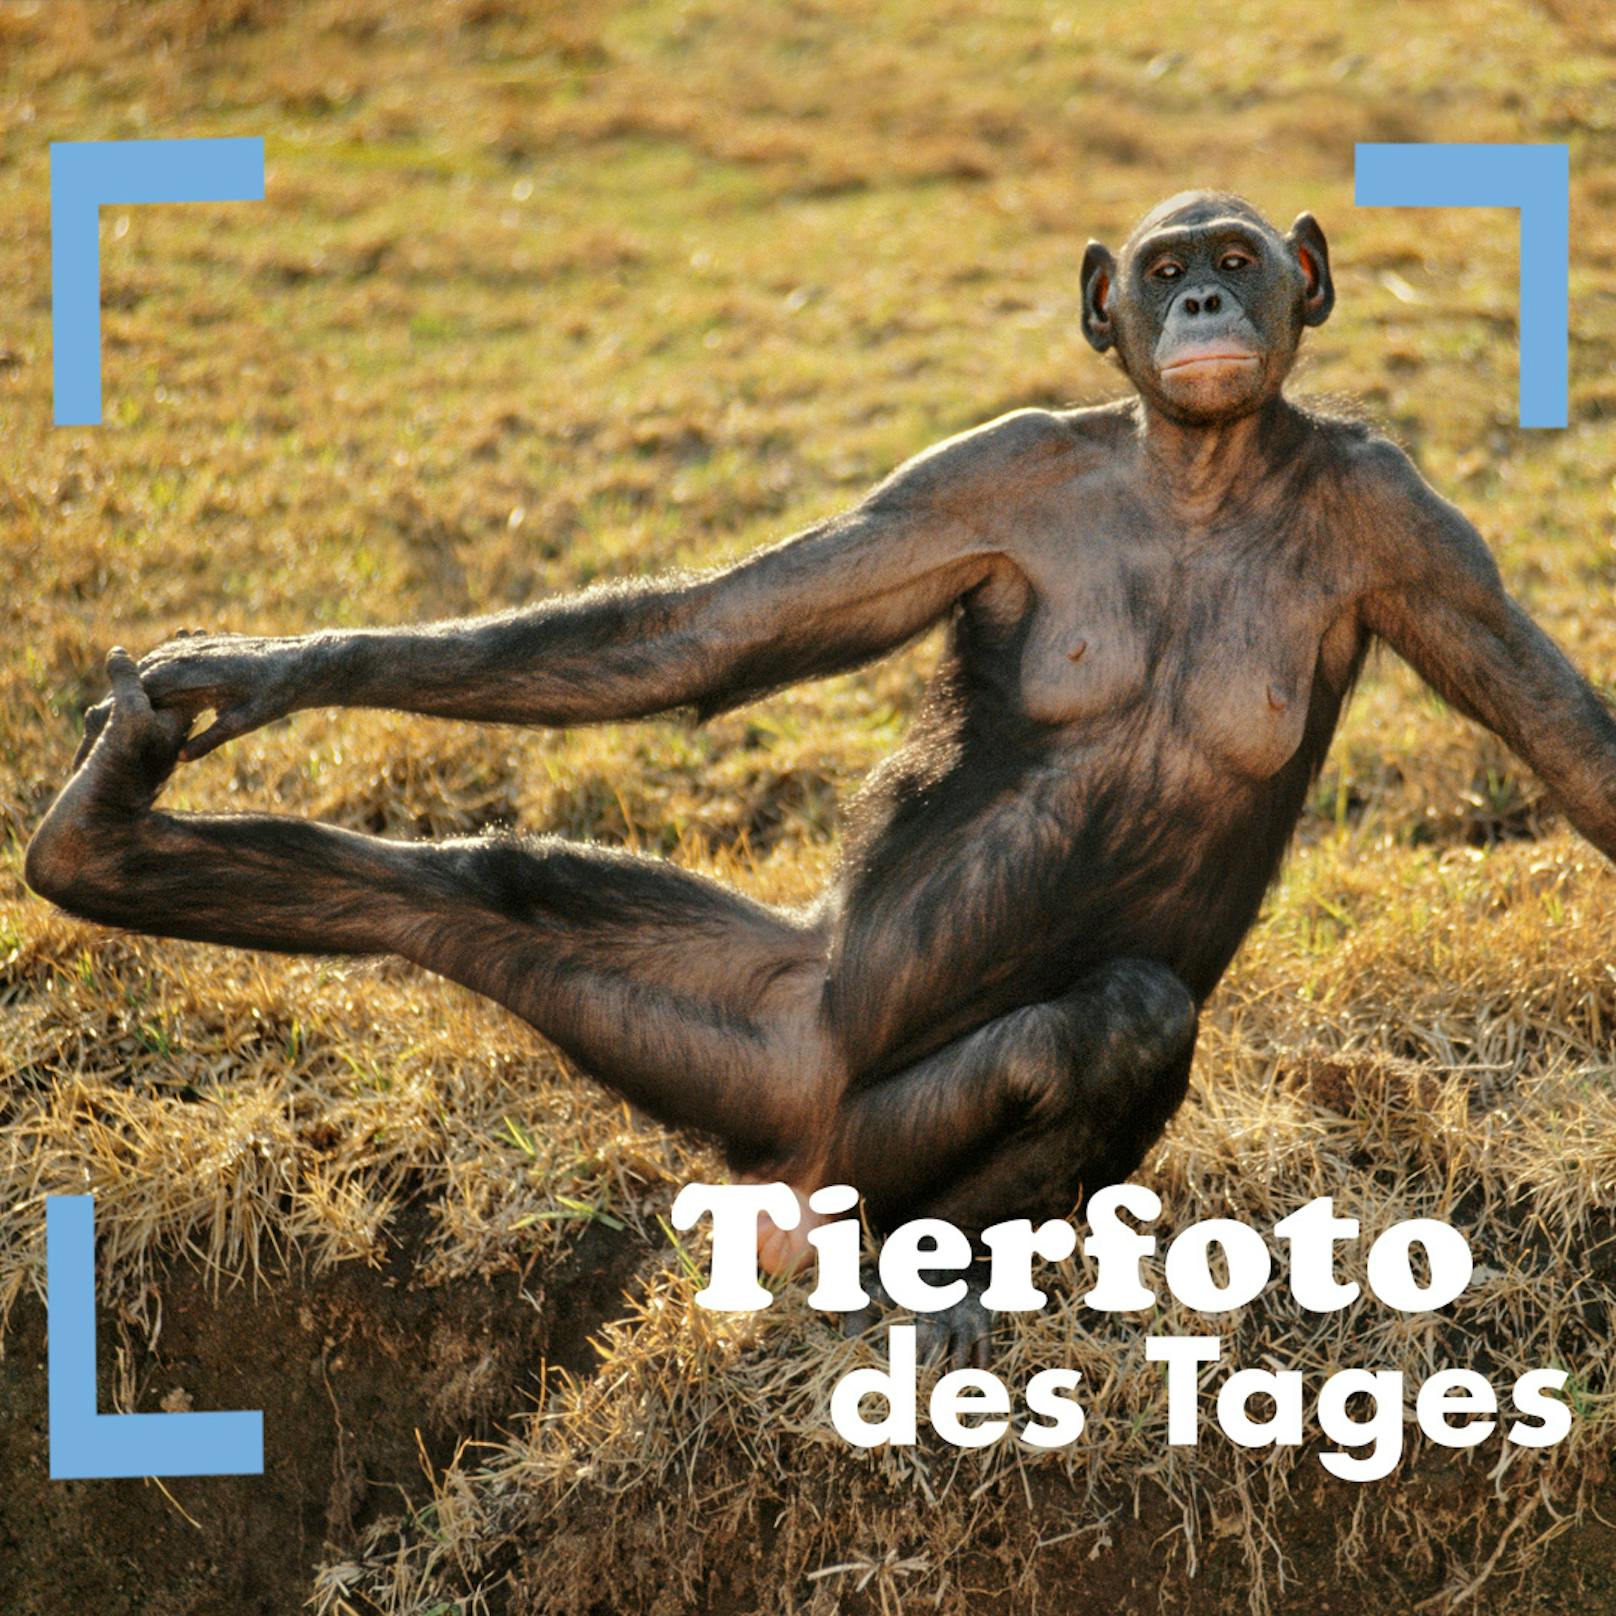 Bald ist Wochenende! Zeit für ein bisschen Yoga? Diese Bonobo-Dame macht's vor!